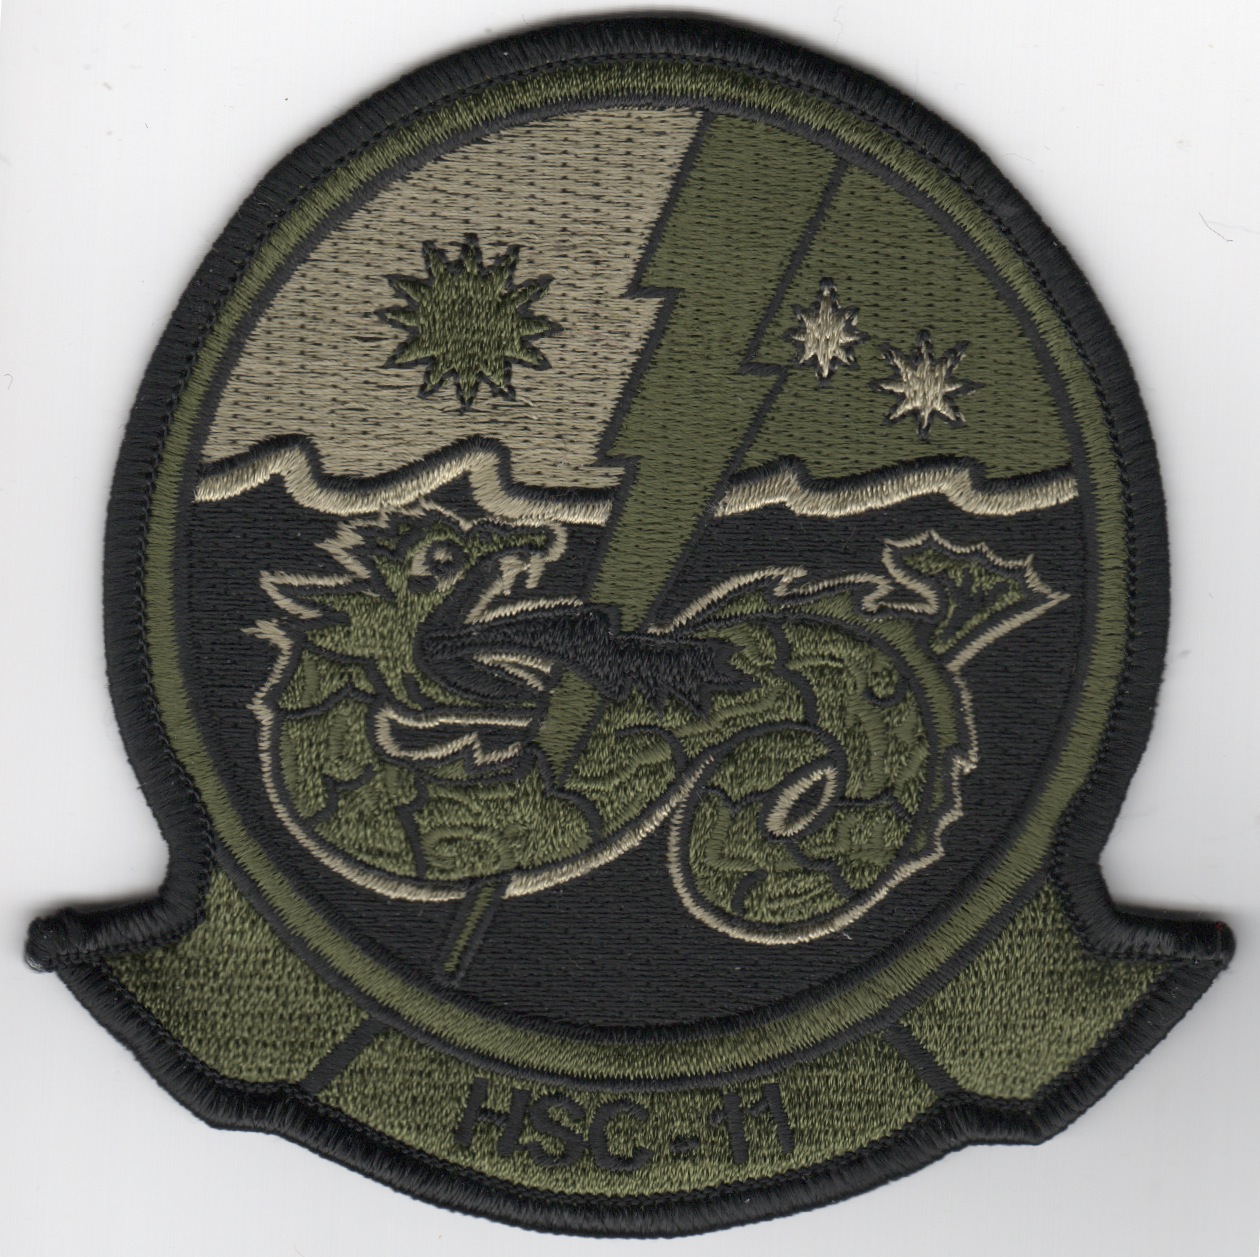 HSC-11 Squadron Patch (Subd)